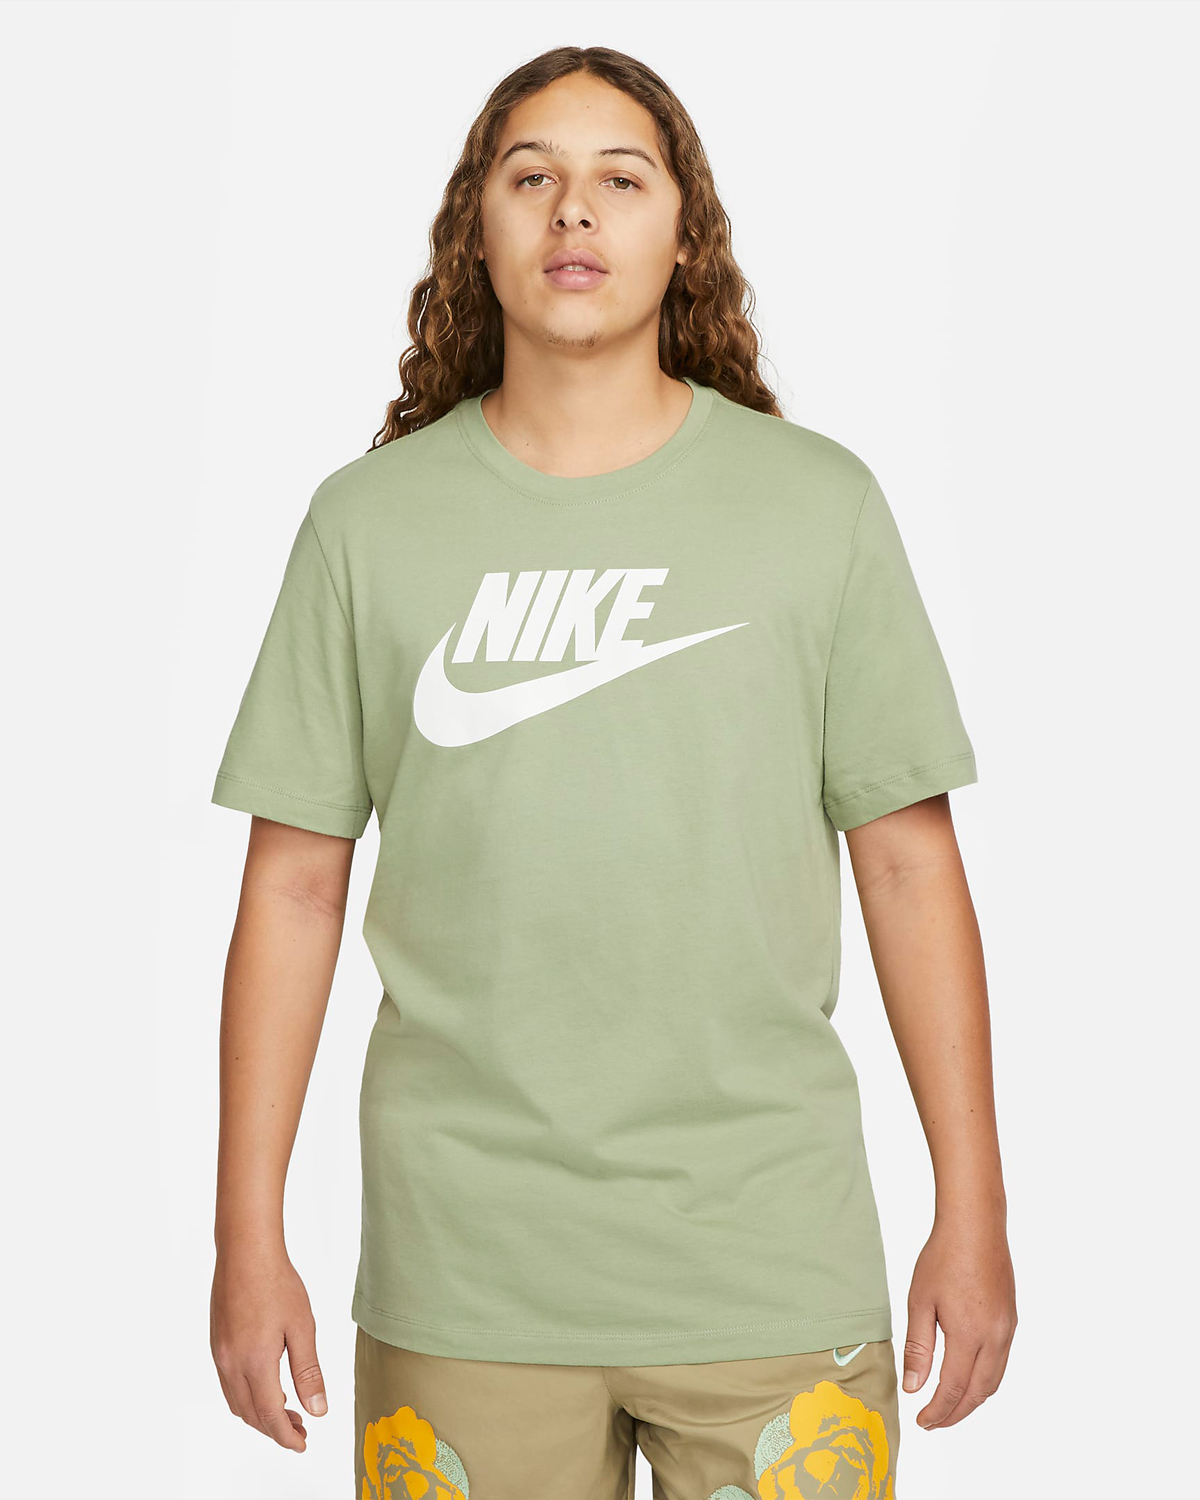 Nike Sportswear Oil Green T Shirt